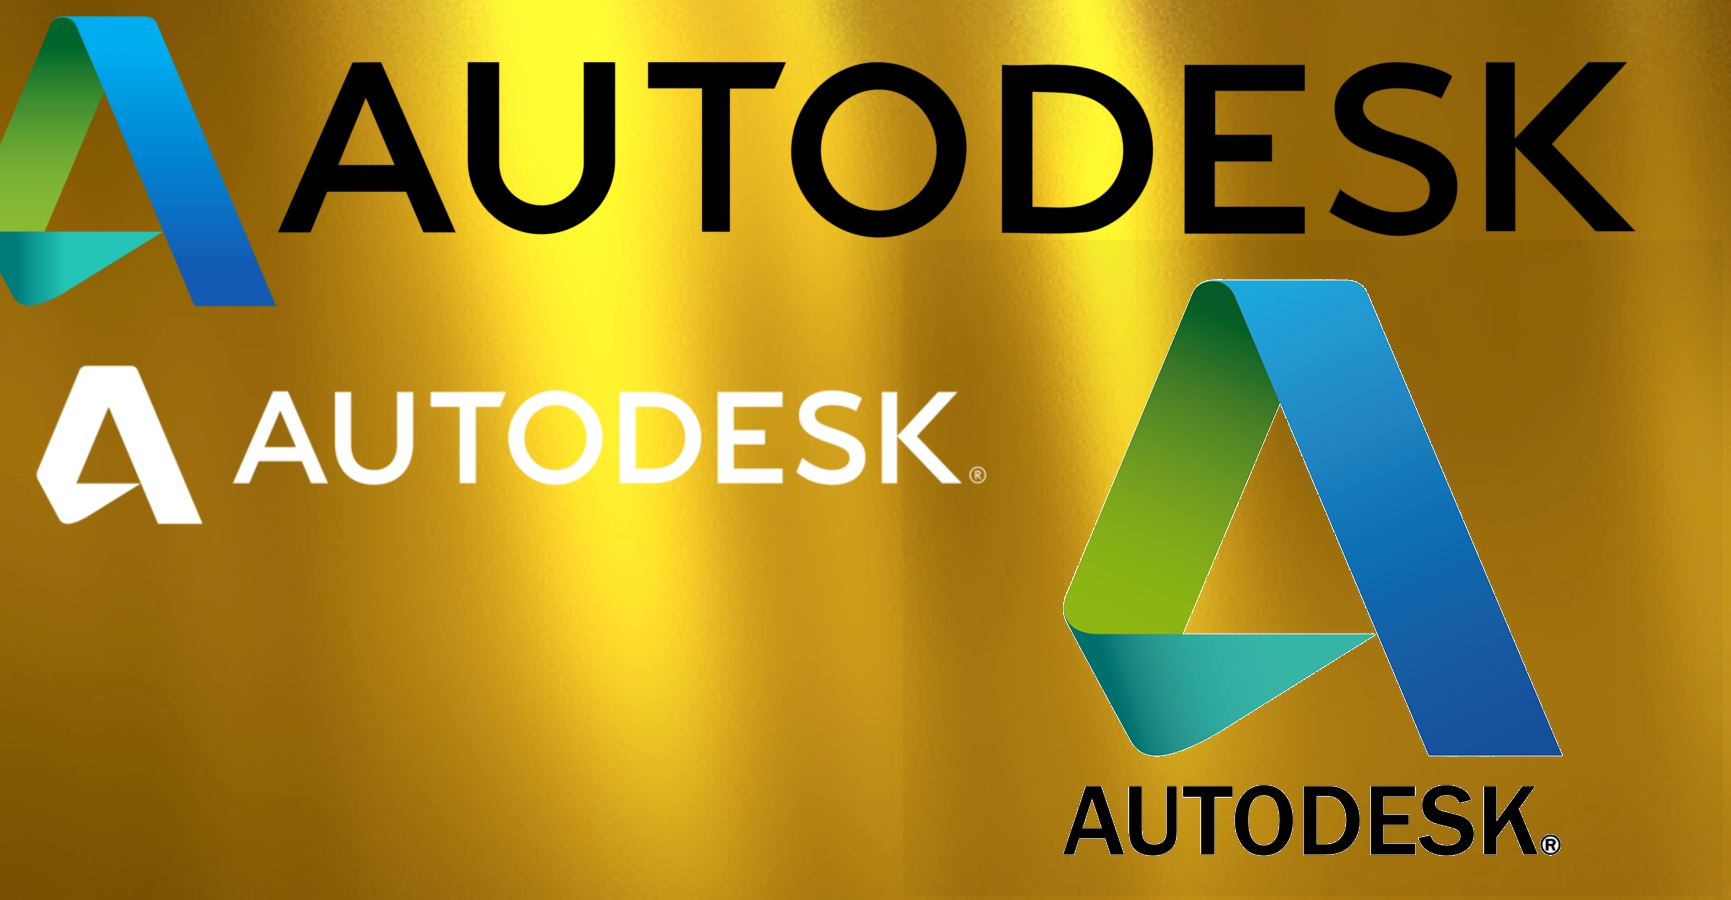 autodesk logo.jpg